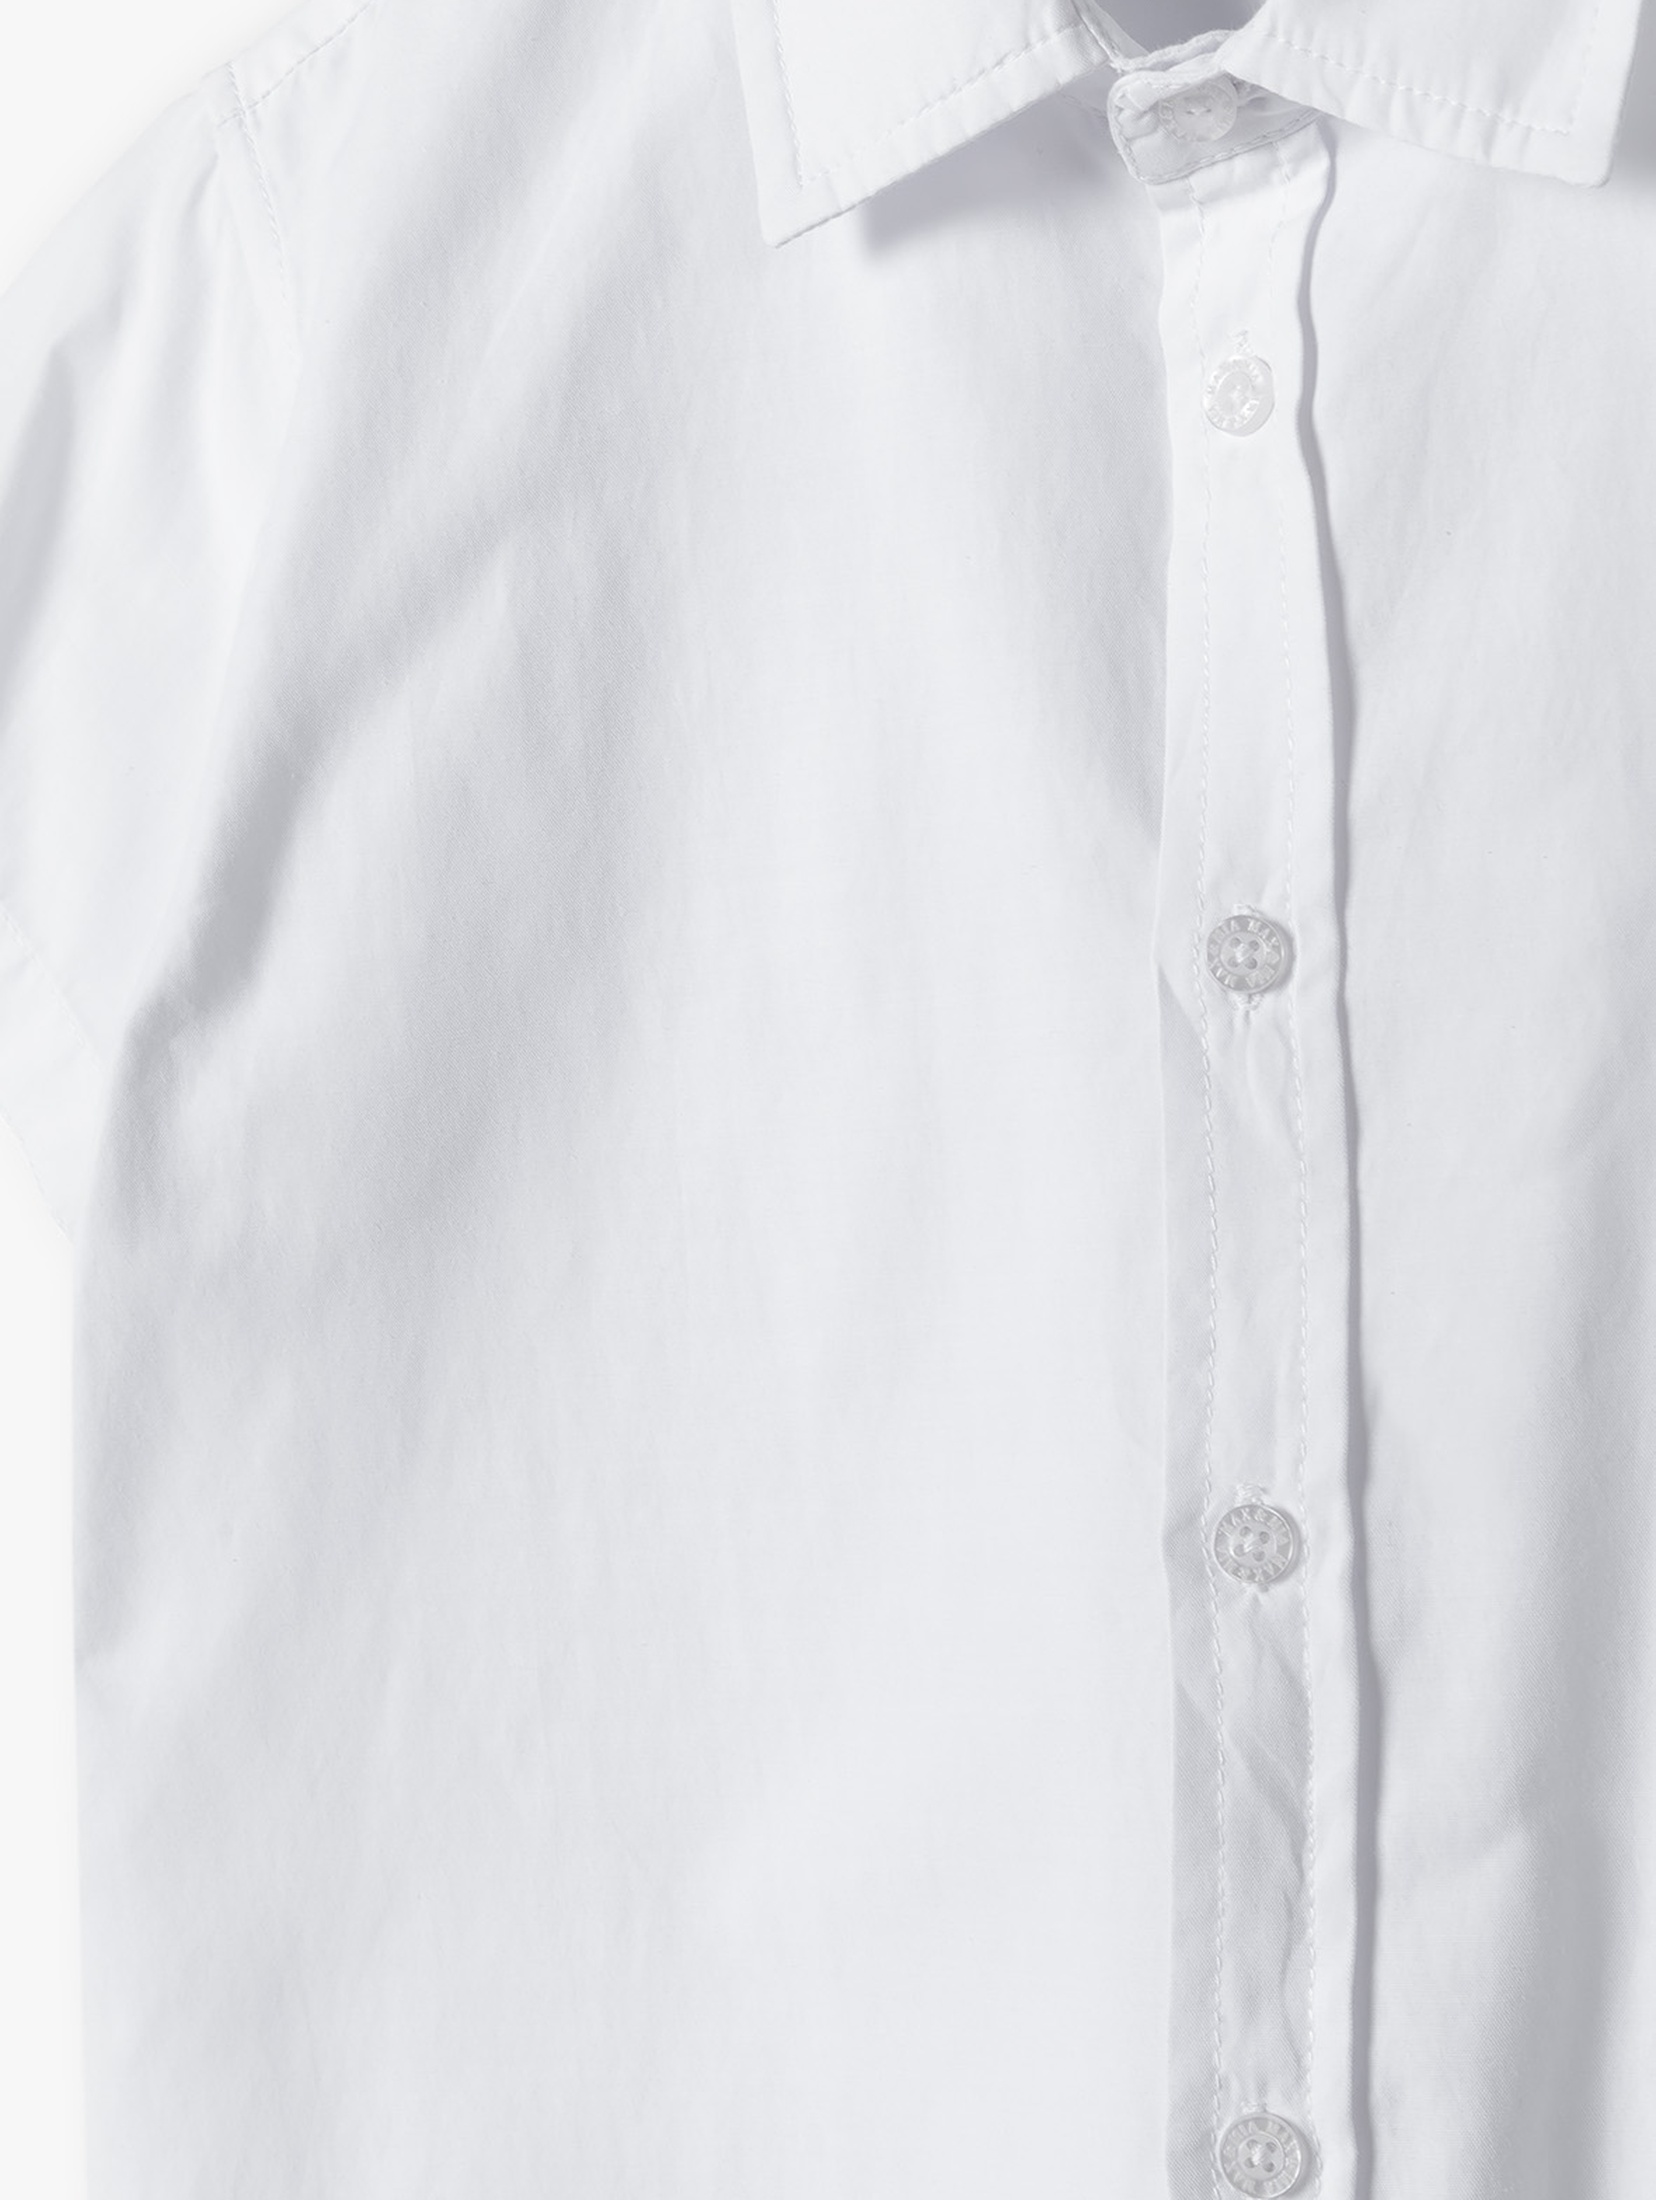 Biała elegancka koszula dla chłopca - krótki rękaw - Max&Mia